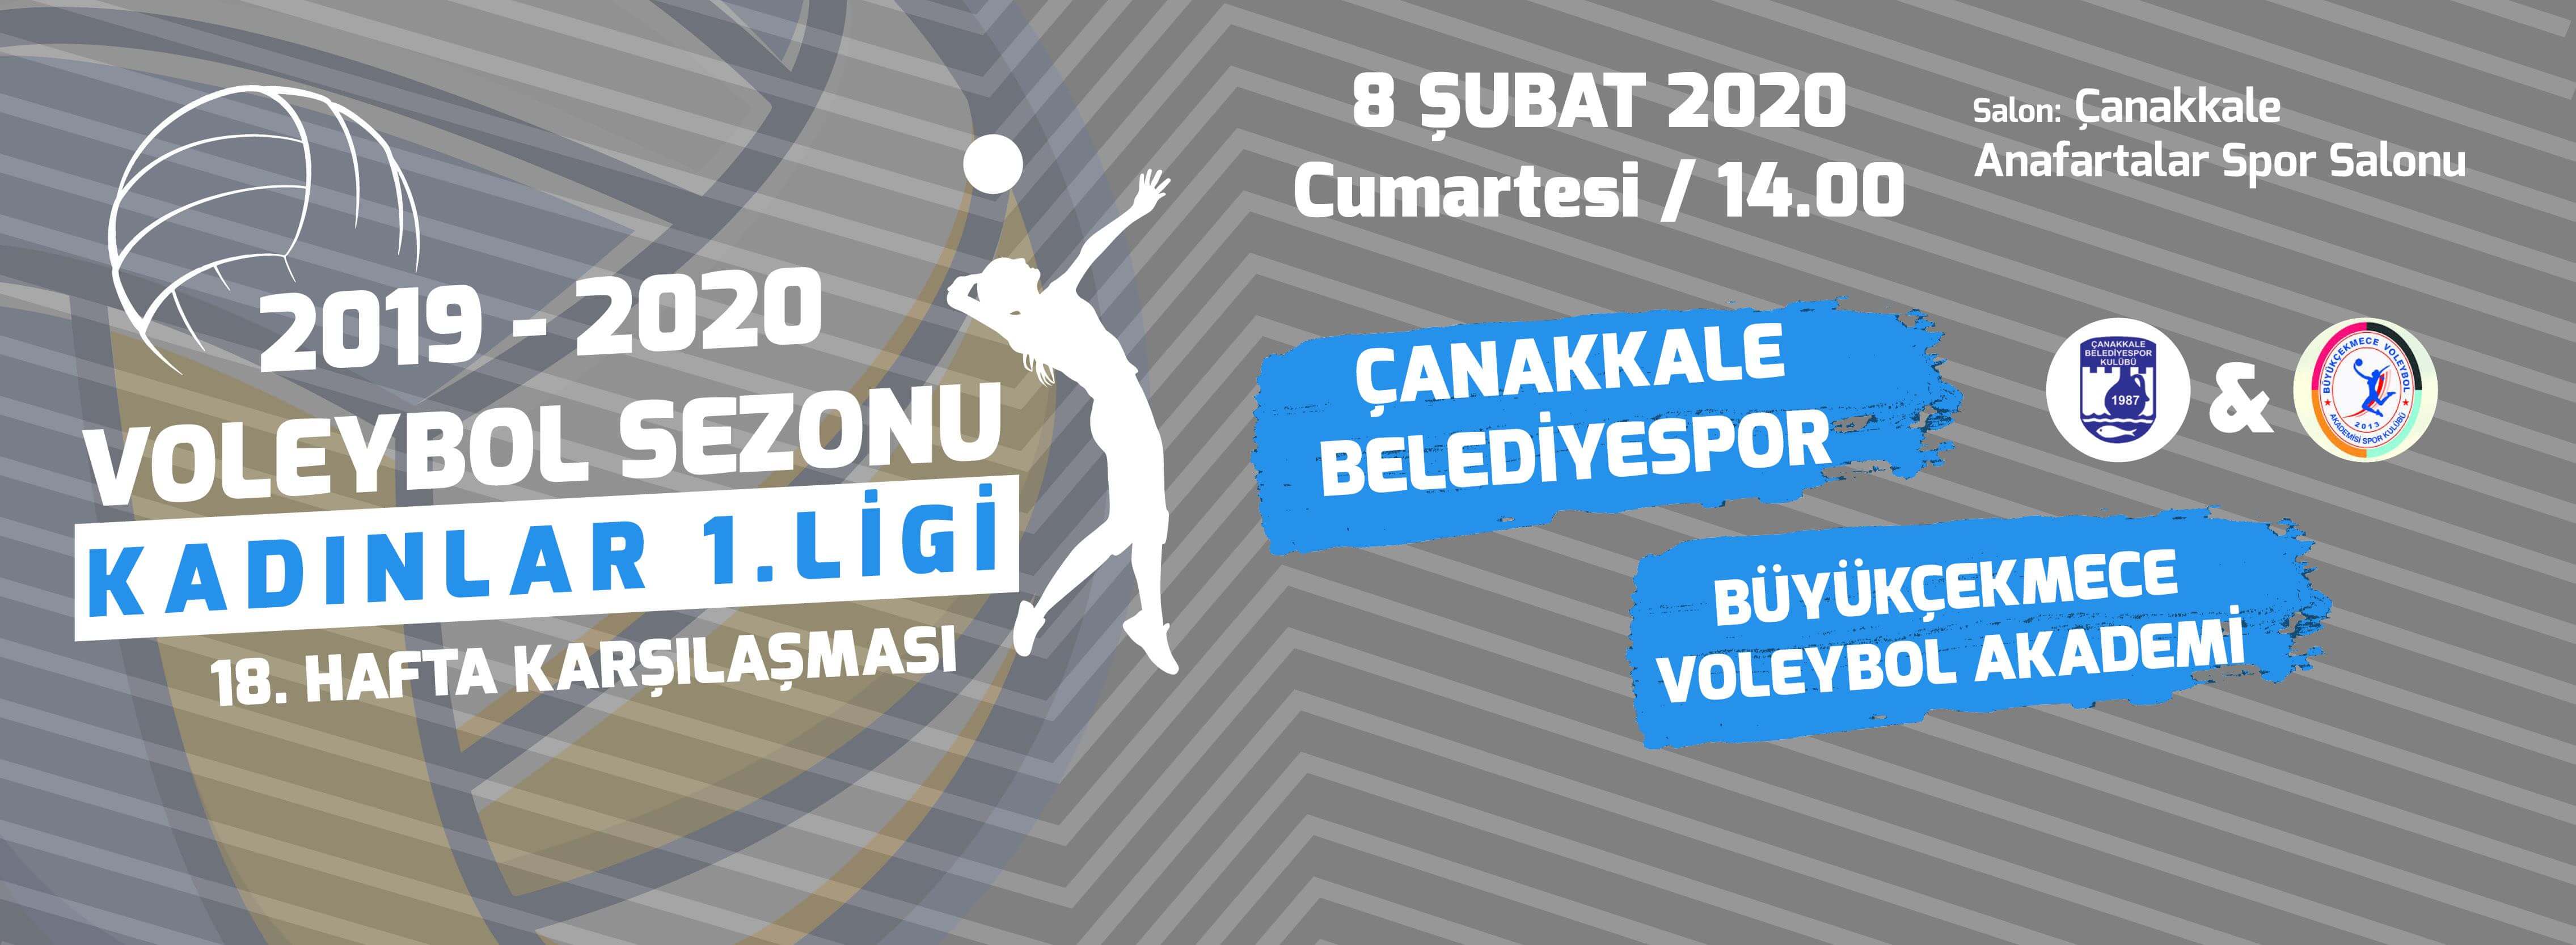 Çanakkale Belediyespor, Büyükçekmece Voleybol Akademi'yi Ağırlıyor!